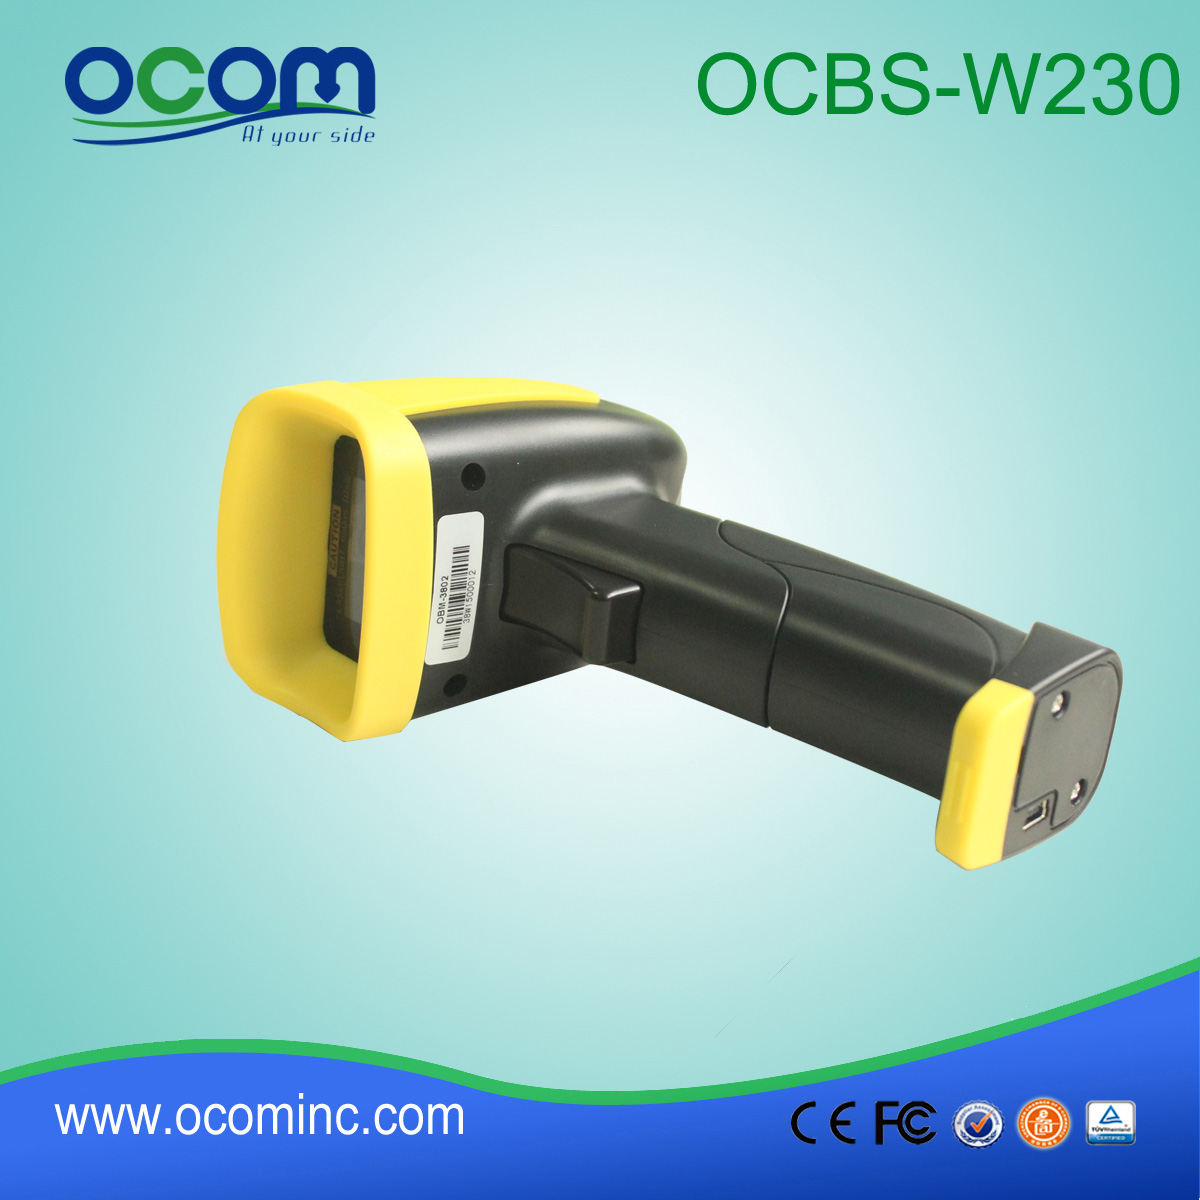 Ręczny skaner laserowy bezprzewodowy moduł kodów kreskowych-W230 OCBS